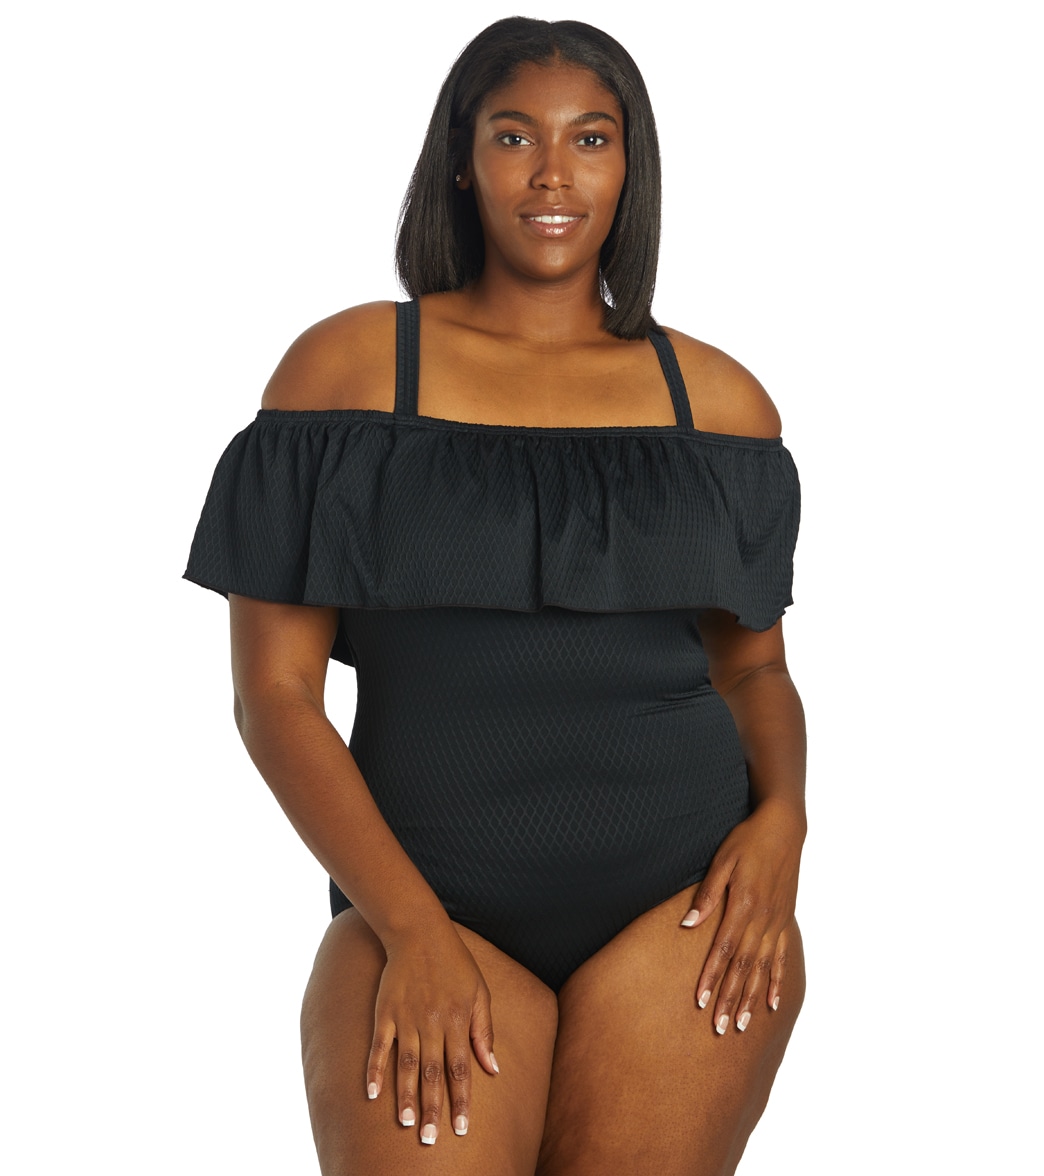 Fit4U Women's Plus Size Solid Texture Off Shoulder Tank One Piece Swmsuit - Black 16W - Swimoutlet.com